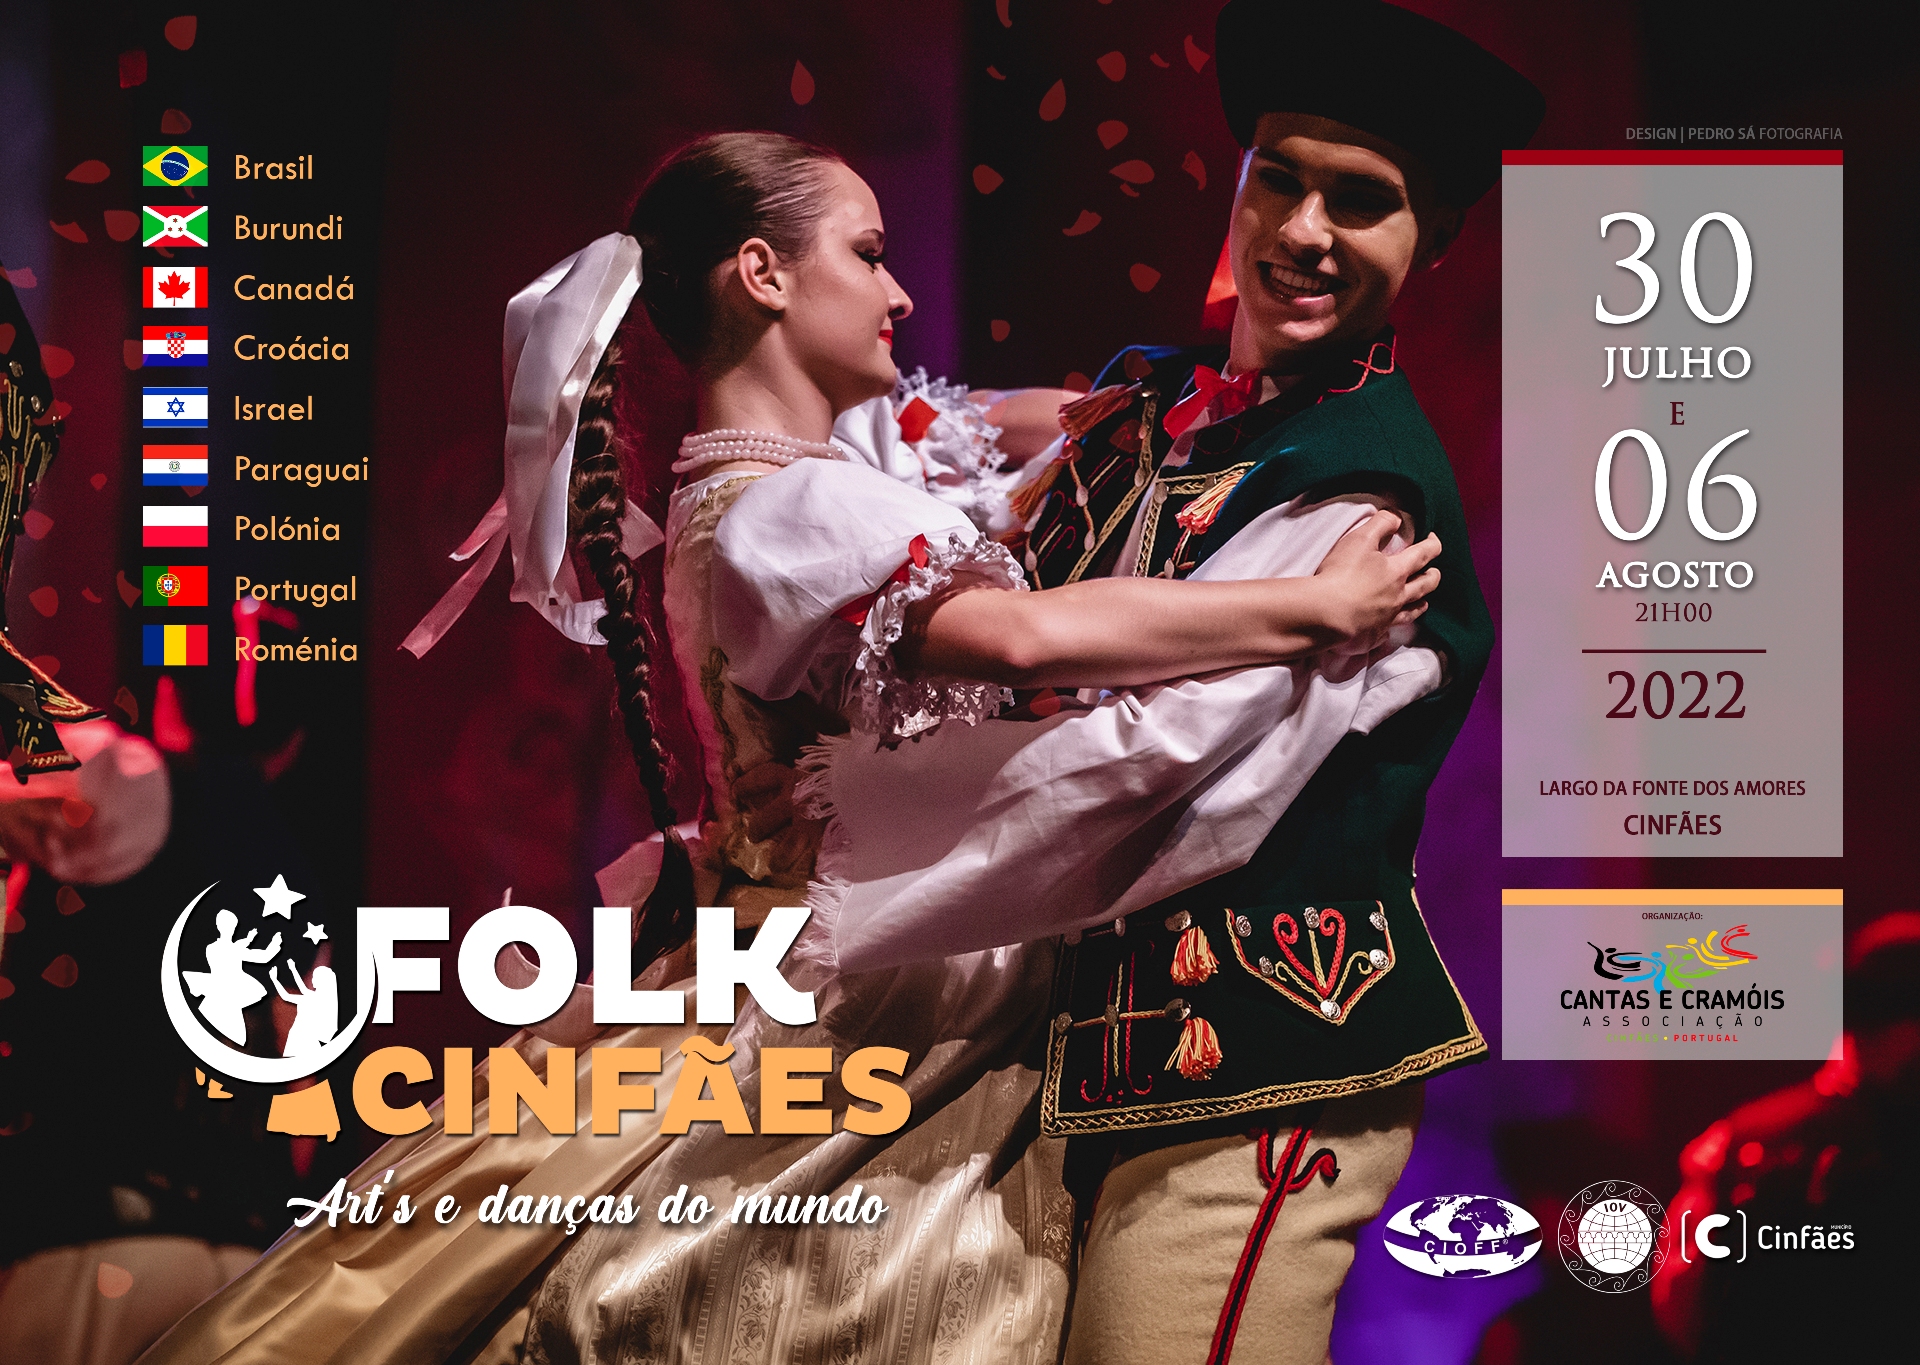 FolkCinfães - Art's e danças do mundo